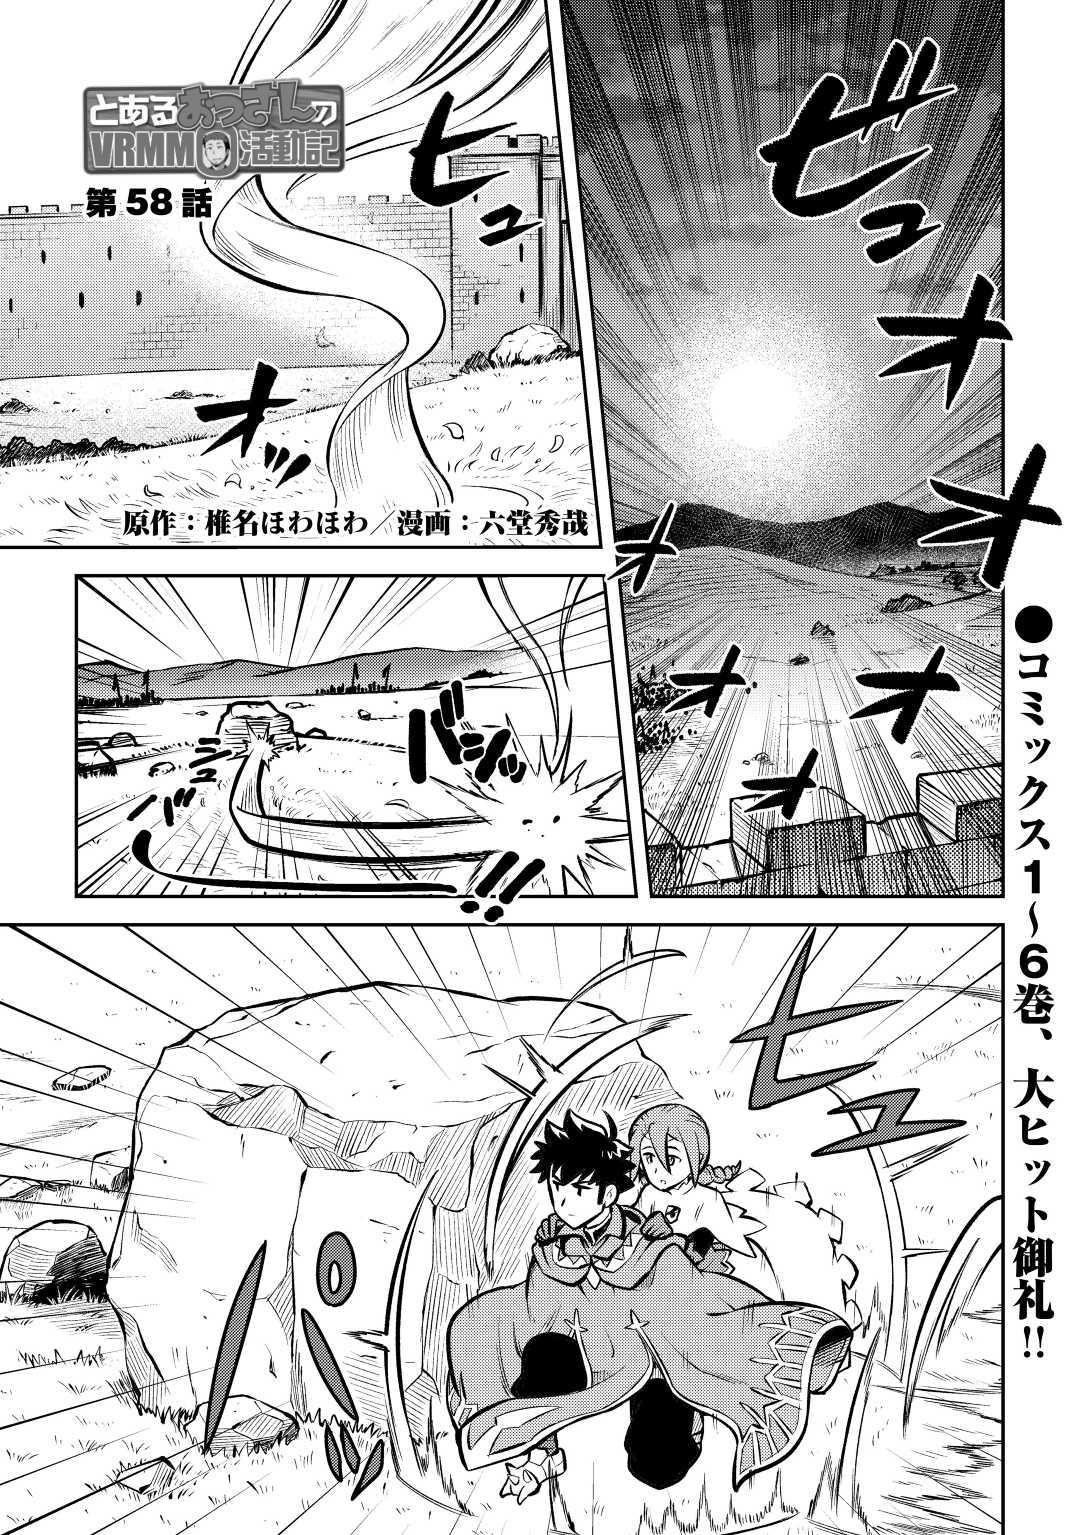 Toaru Ossan no VRMMO Katsudouki - Chapter 58 - Page 1